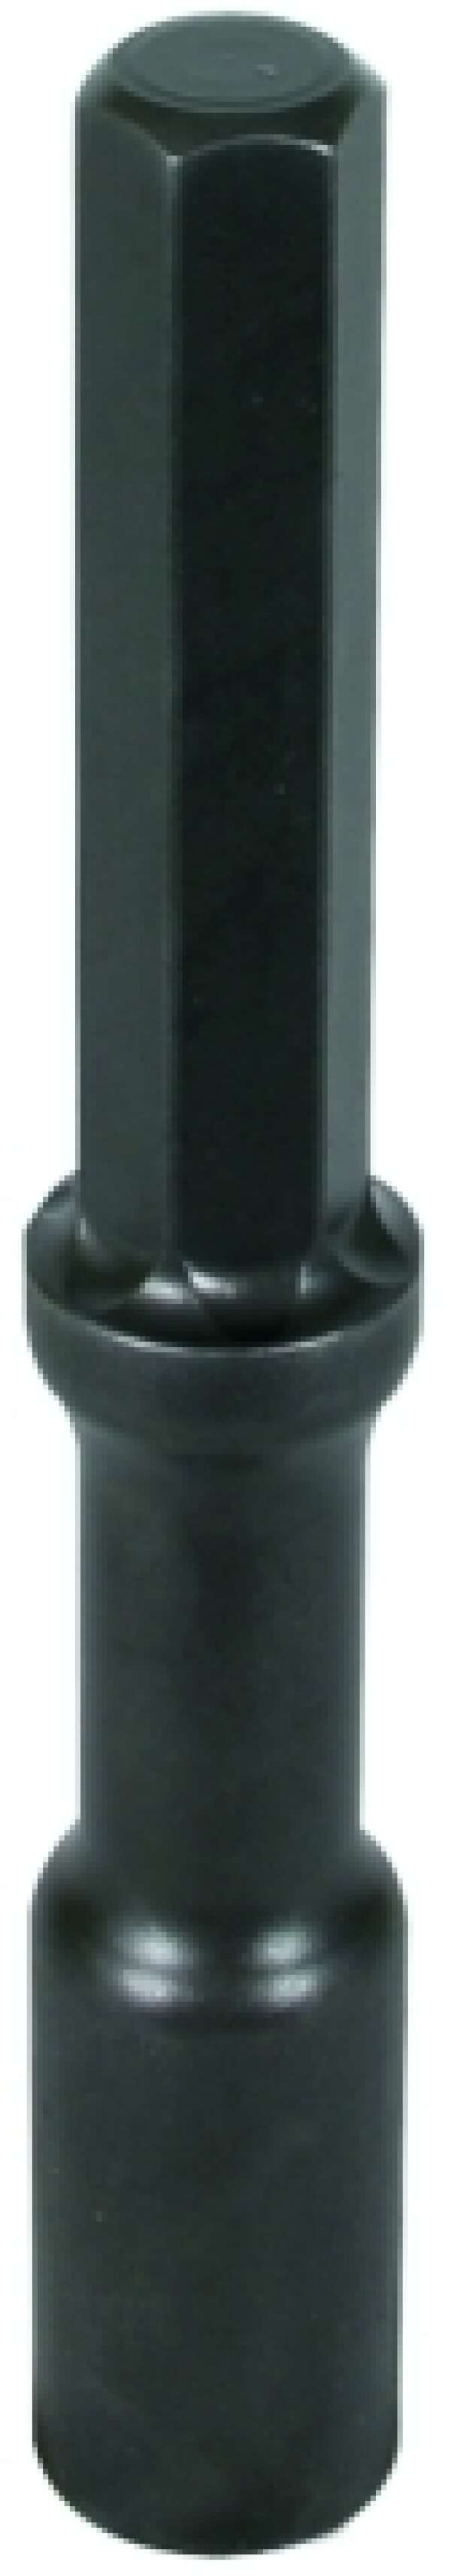 DEHN 625 007 Ударная насадка для вибромолота Atlas Copco SW22x108 мм для электродов D=25 мм